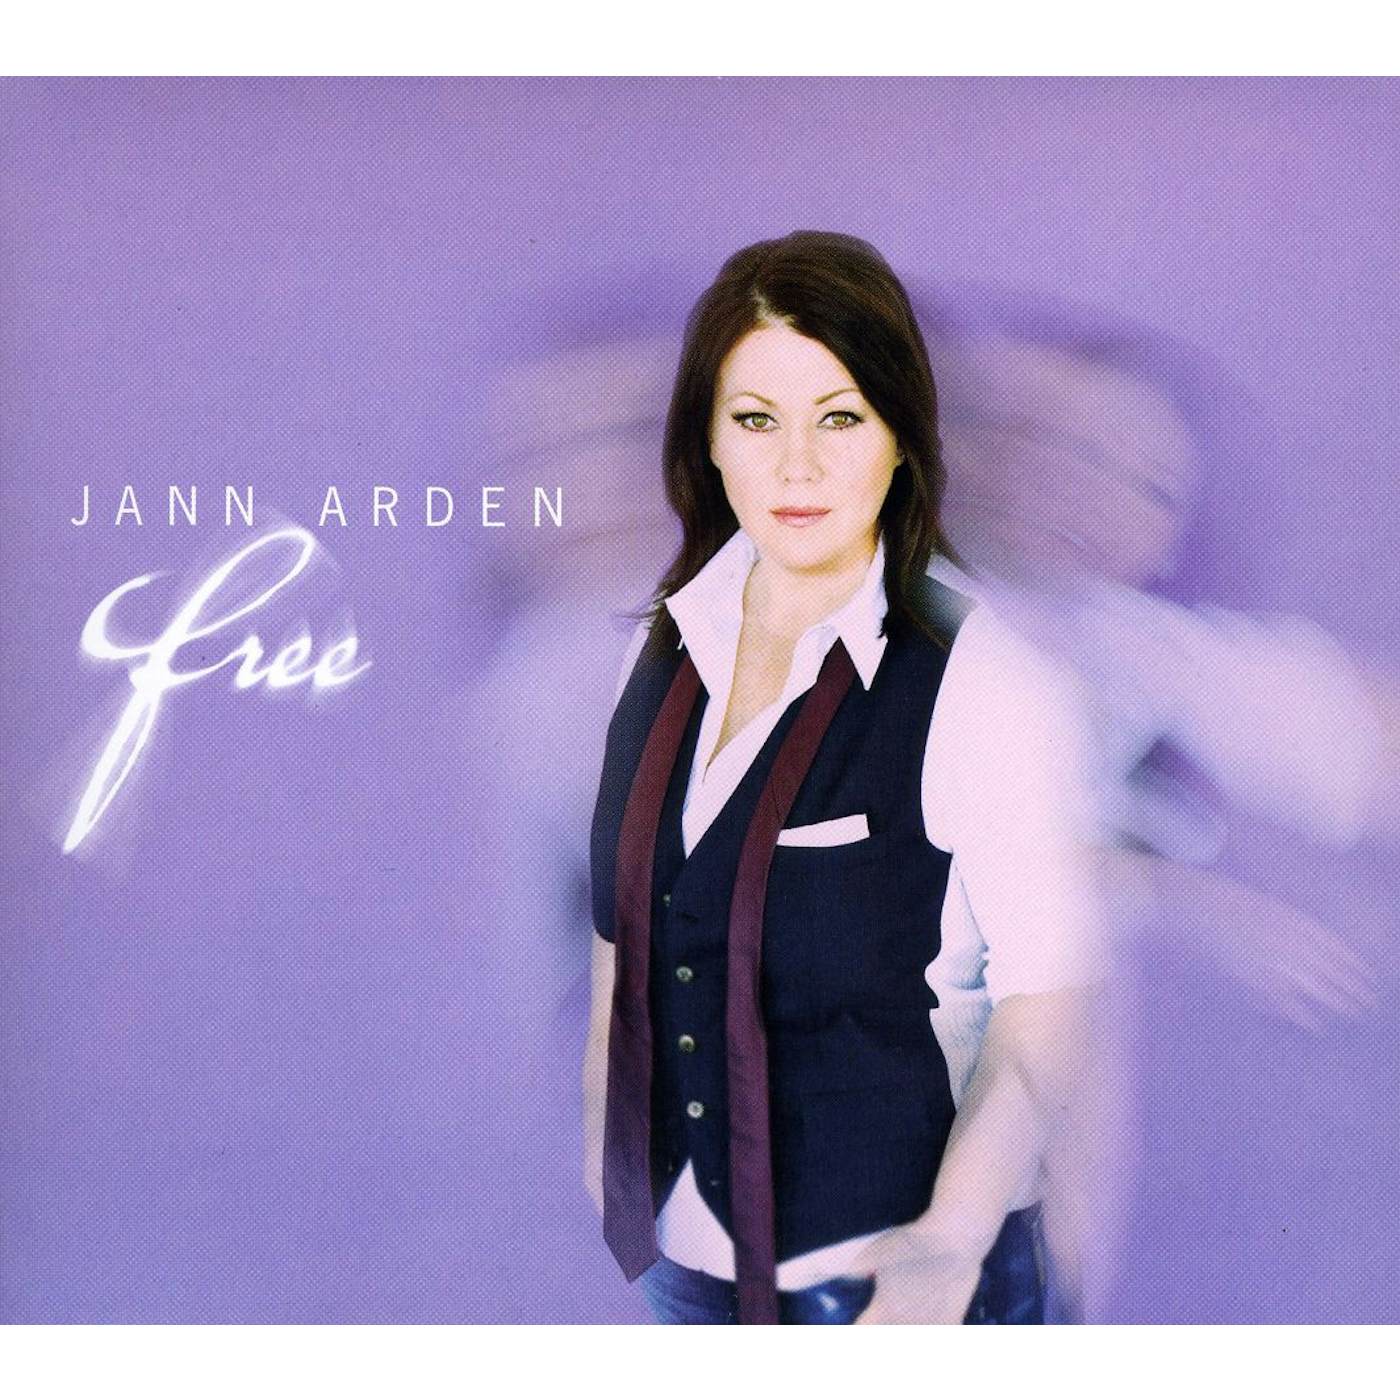 Jann Arden FREE CD